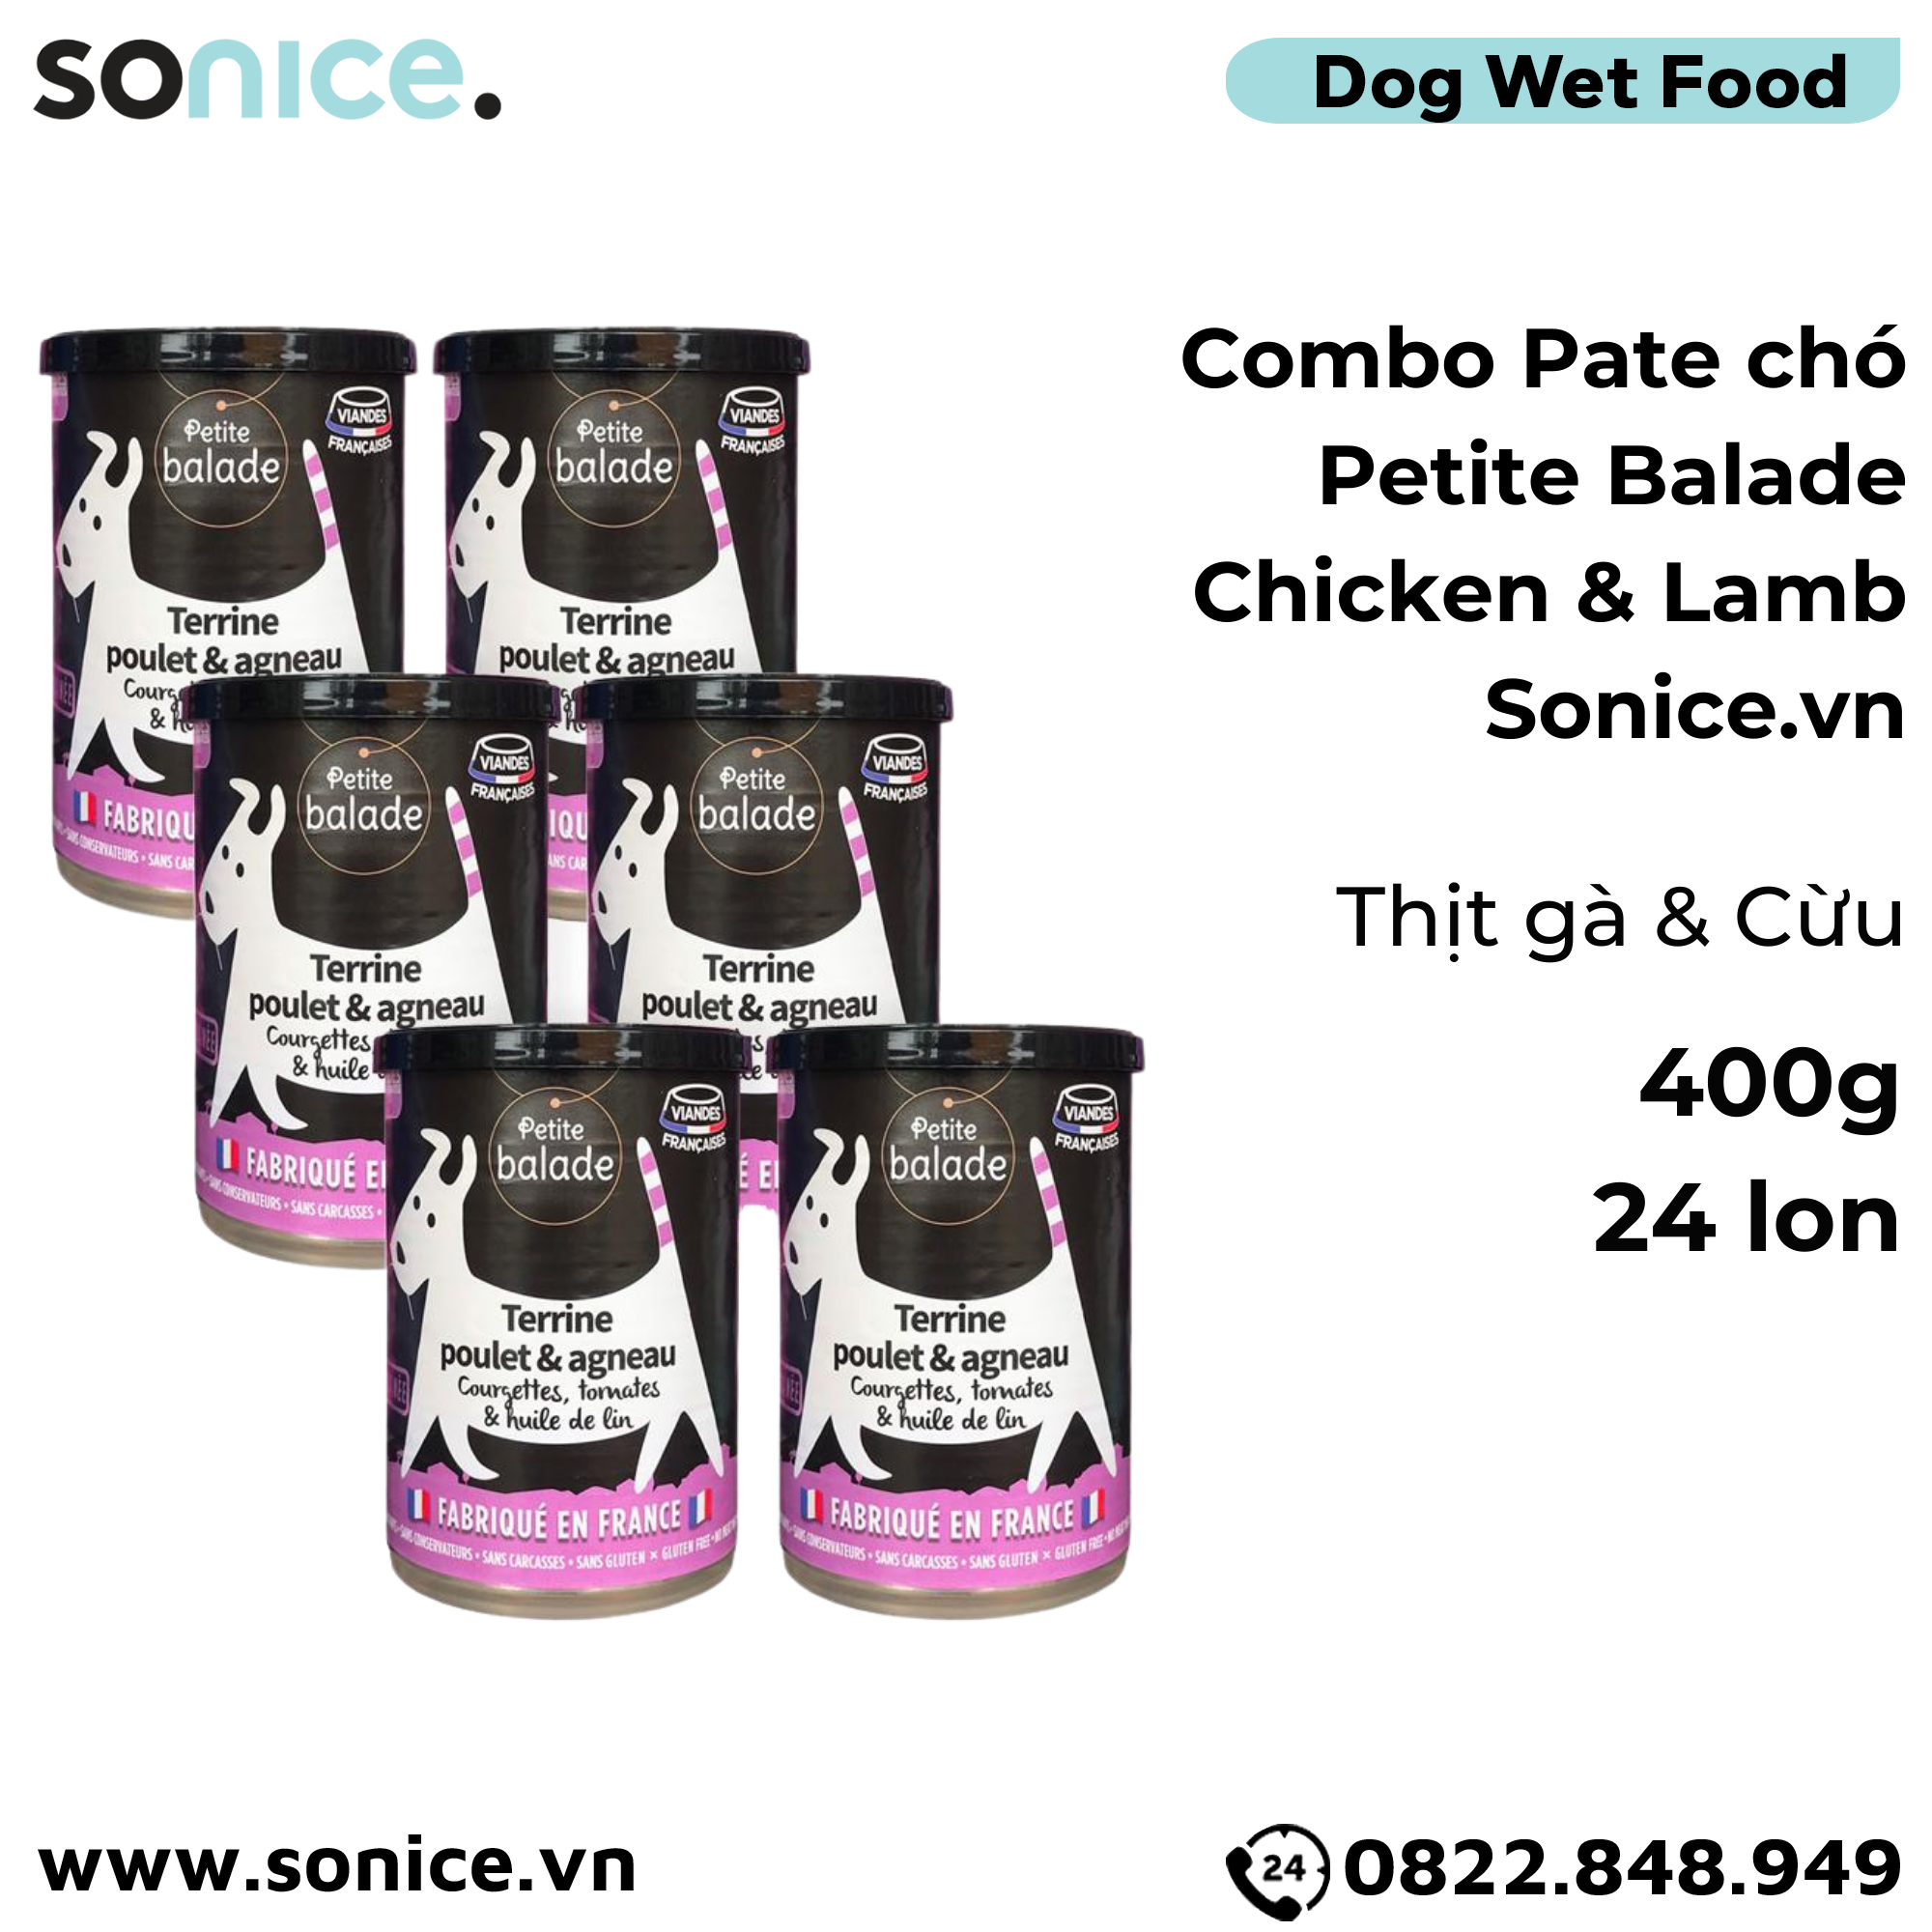  Combo Pate chó Petite Balade Chicken & Lamb 400g - 24 lon - Thịt gà và cừu SONICE. 